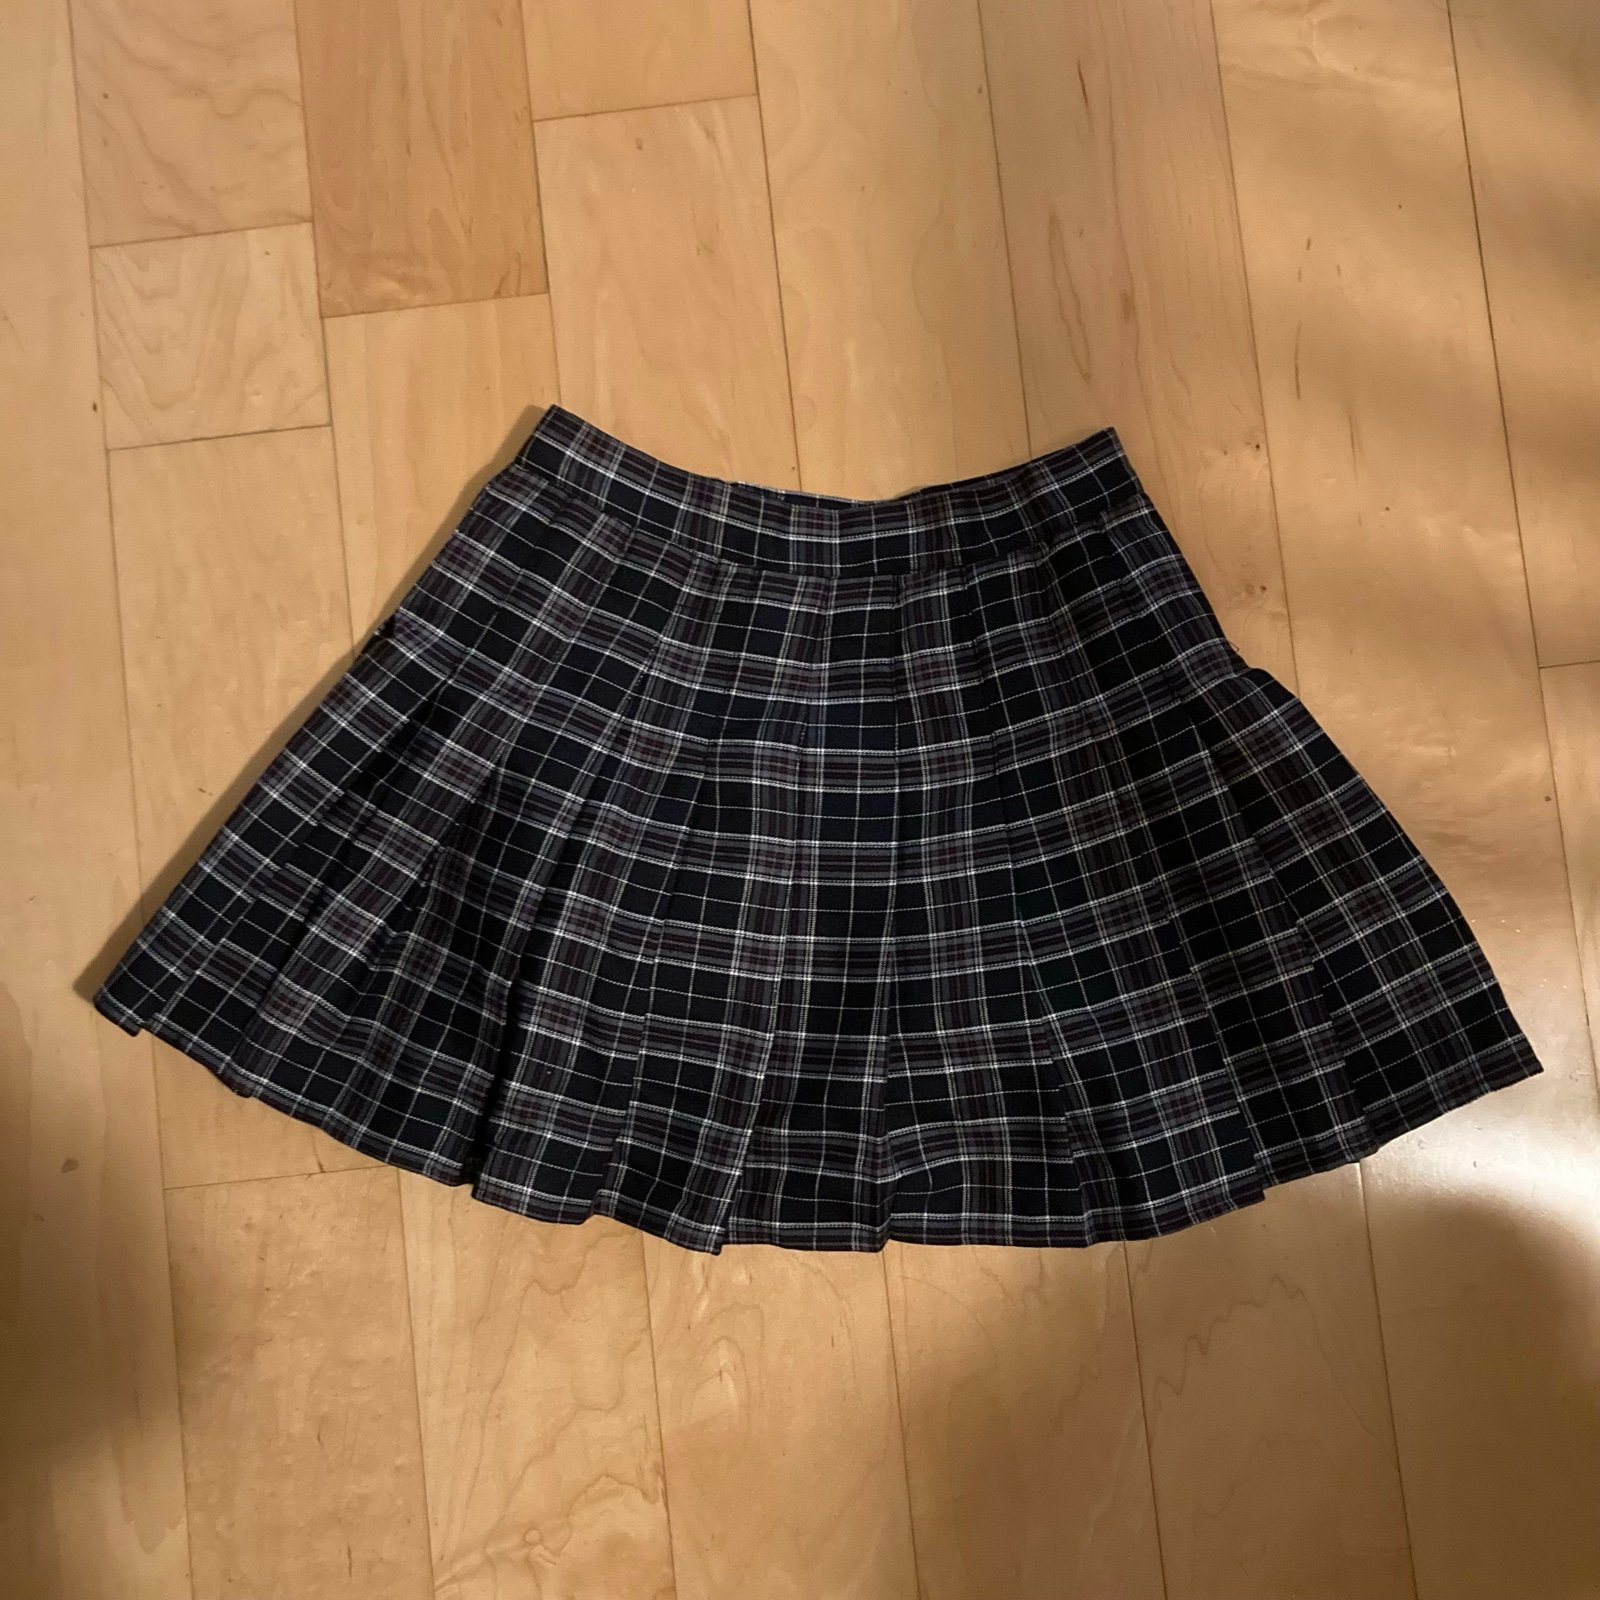 Plaid Skirt cqpFm2qbw